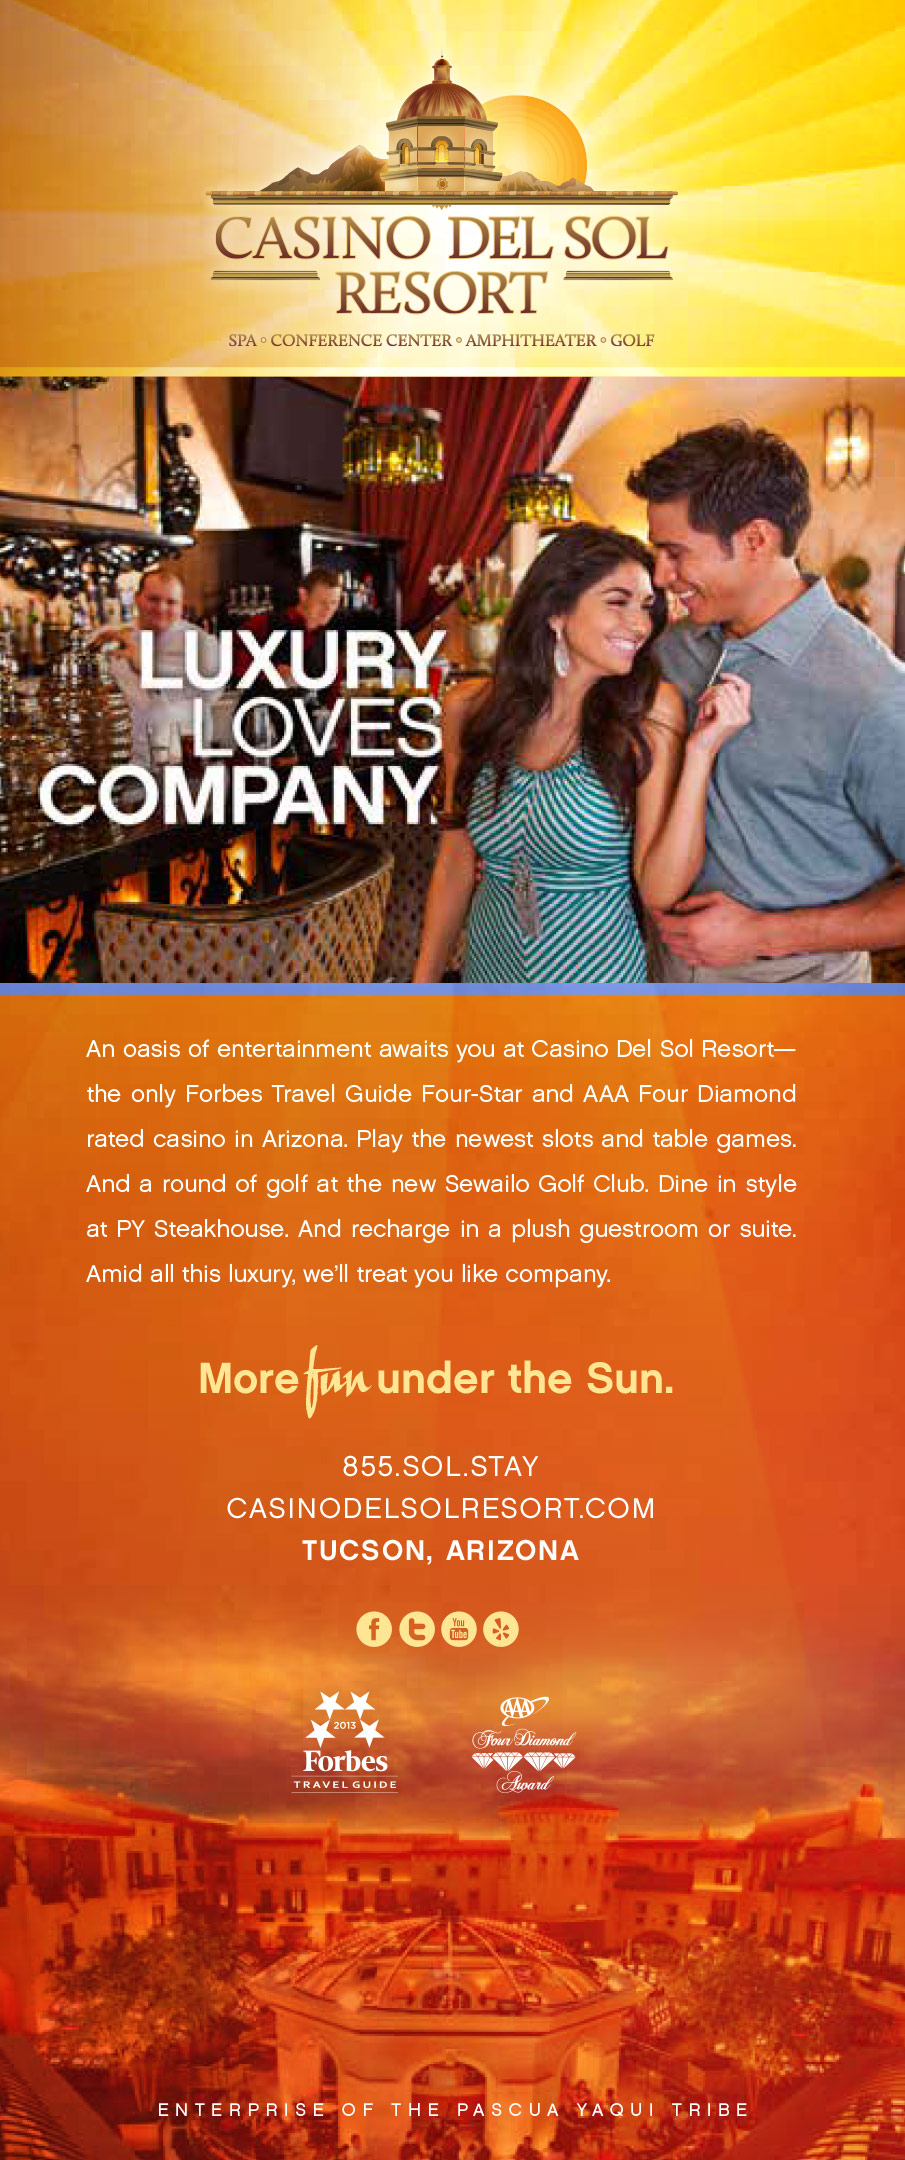 Casino del Sol - Luxury Loves Company.